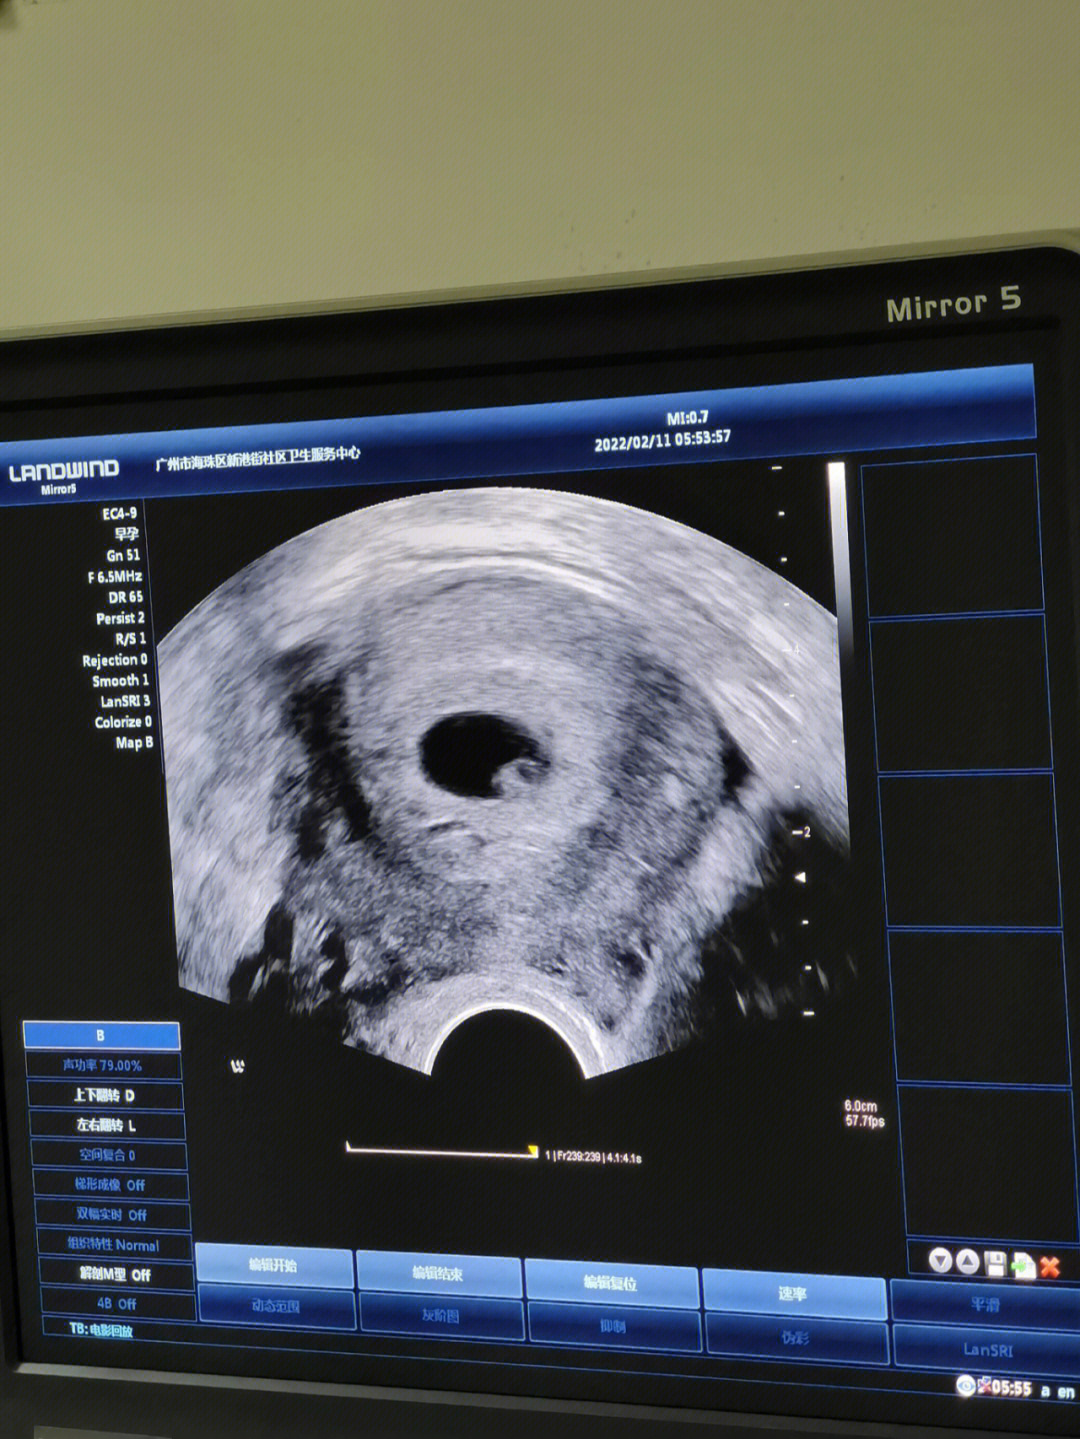 胎儿七周有多大图片图片